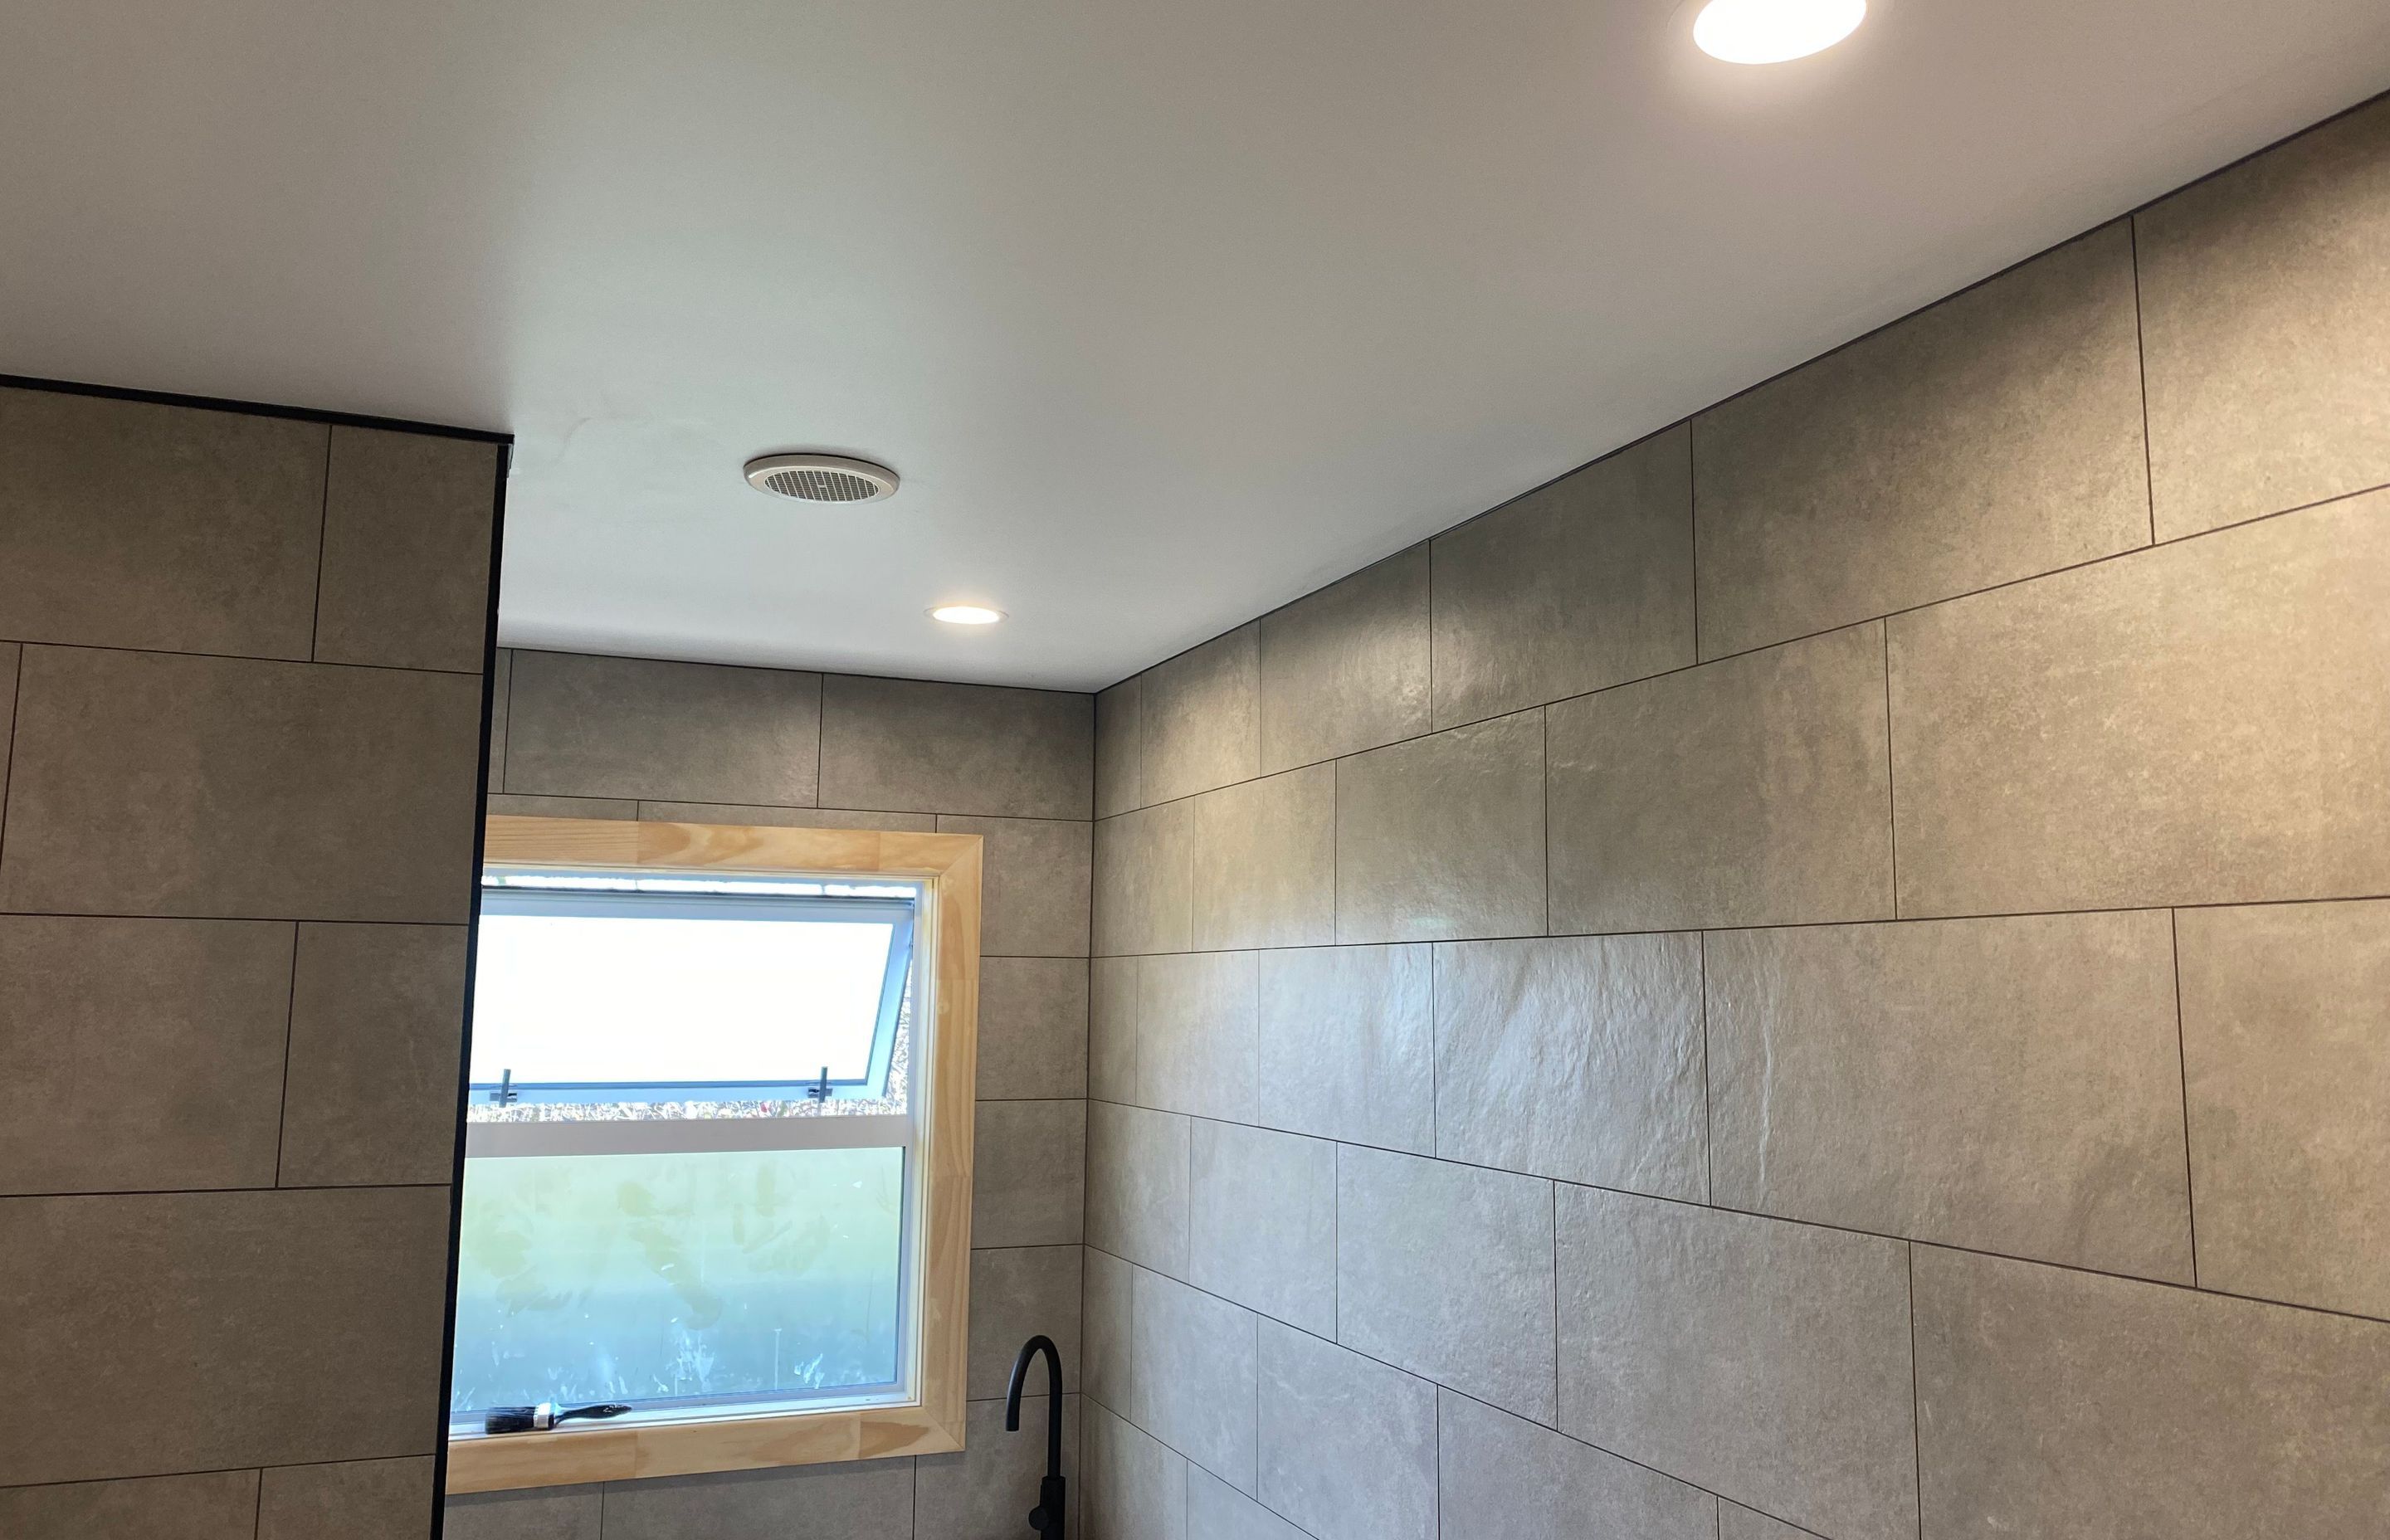 Clive - Bedroom &amp; Bathroom renovations